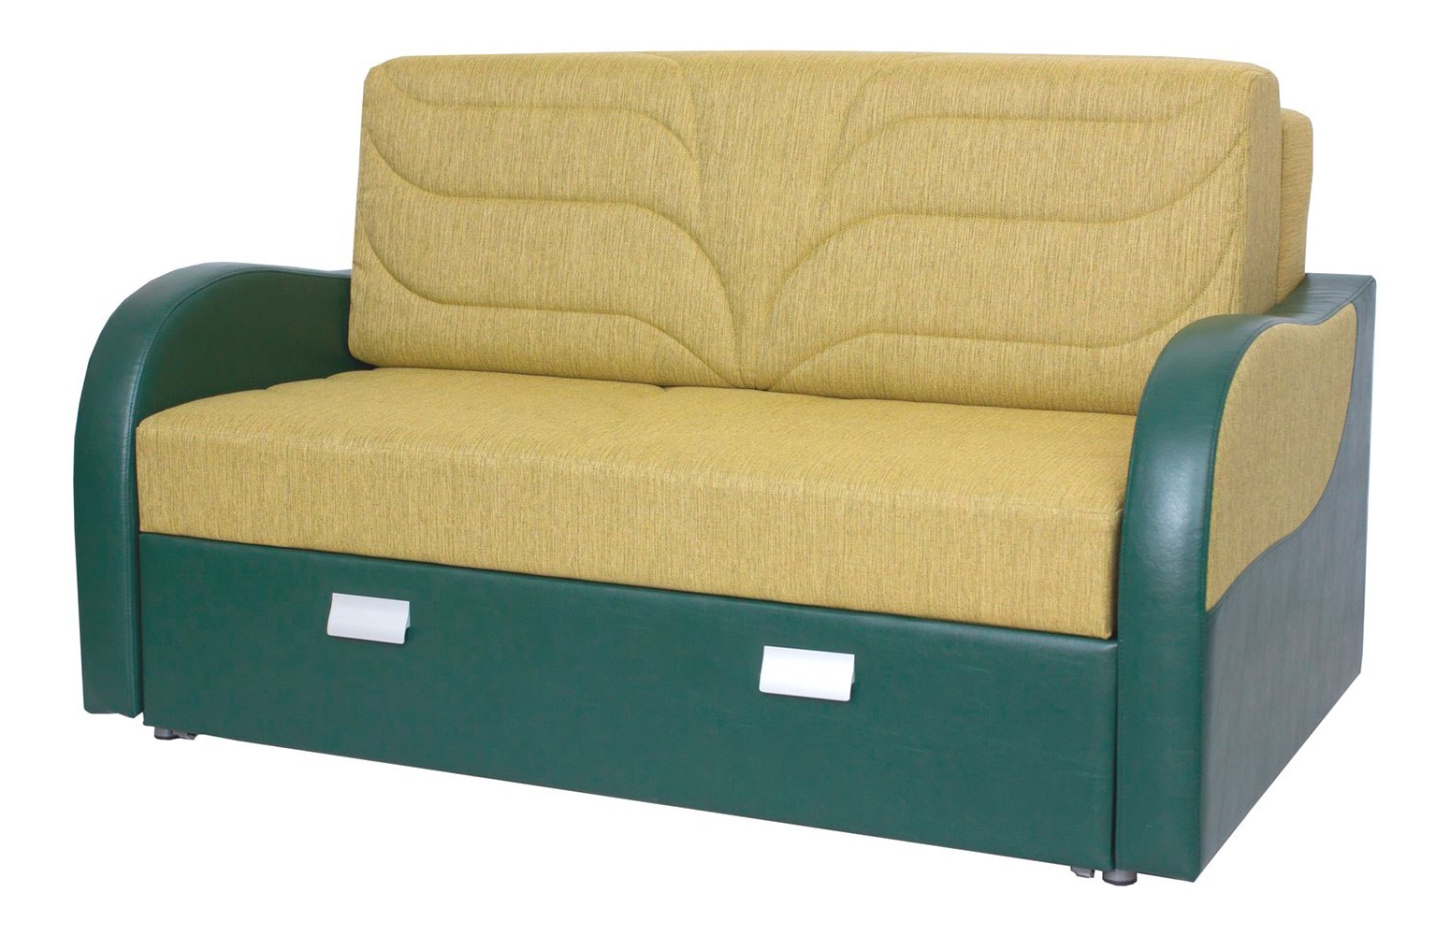 Выкатной диван Диана мебель садовая диана стол 60х64 см 2 кресла 1 диван подушка 110 кг 121х78х65 см ind02